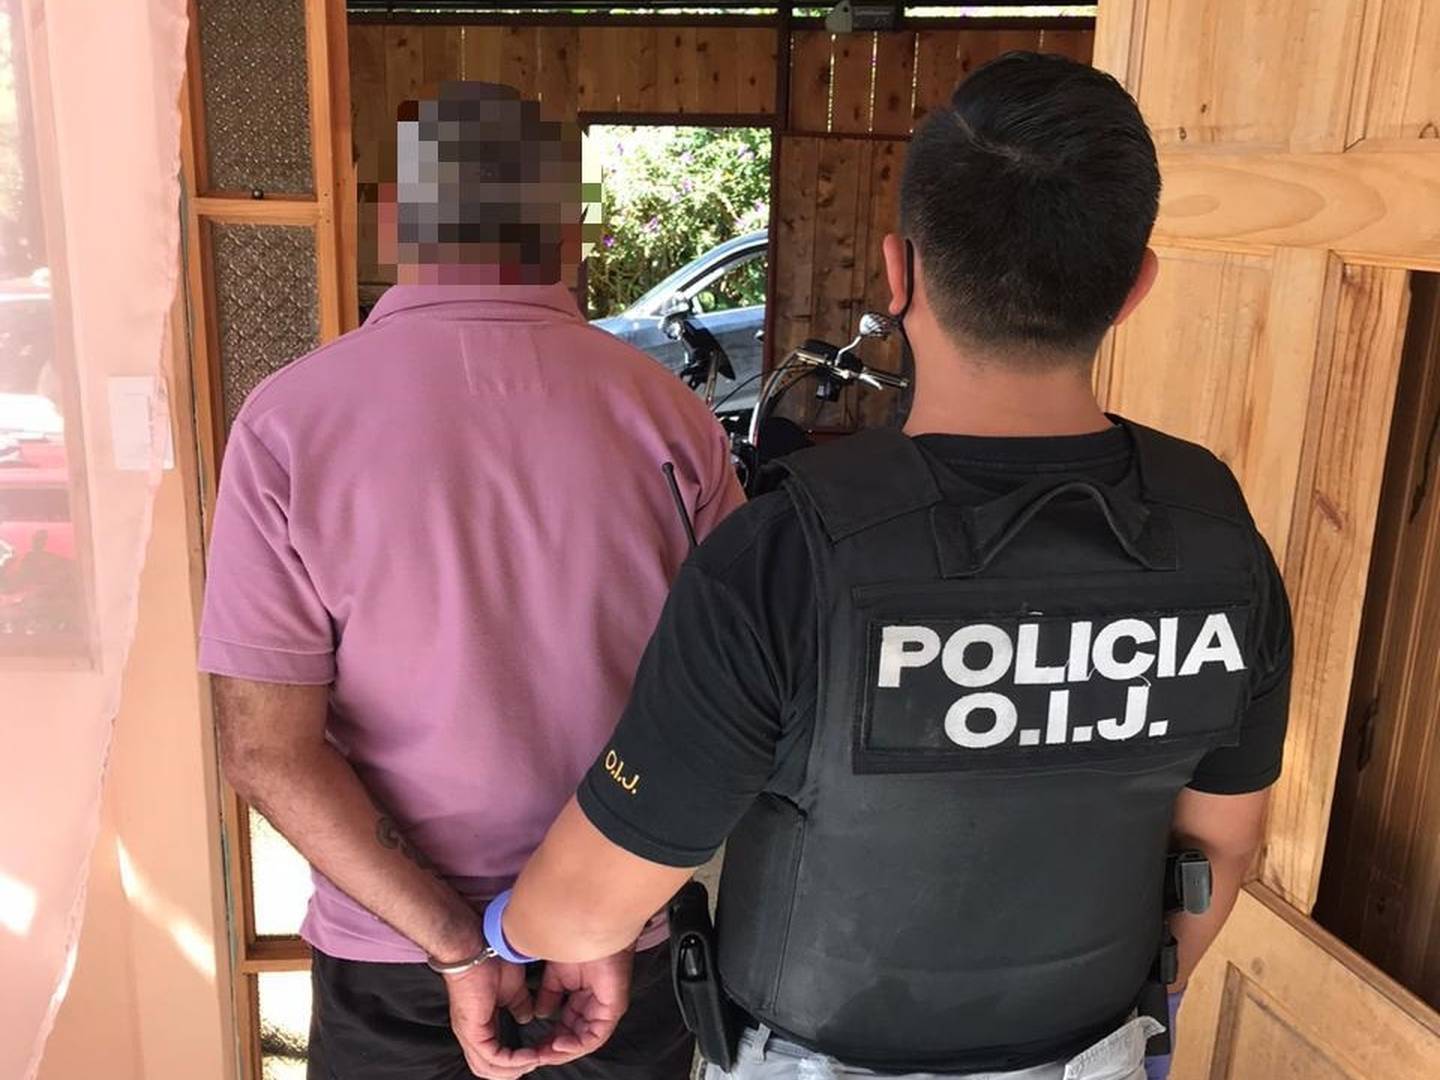 Policía de apellido Hidalgo es detenido como sospechoso de tenencia de pornografía infantil. Foto OIJ.